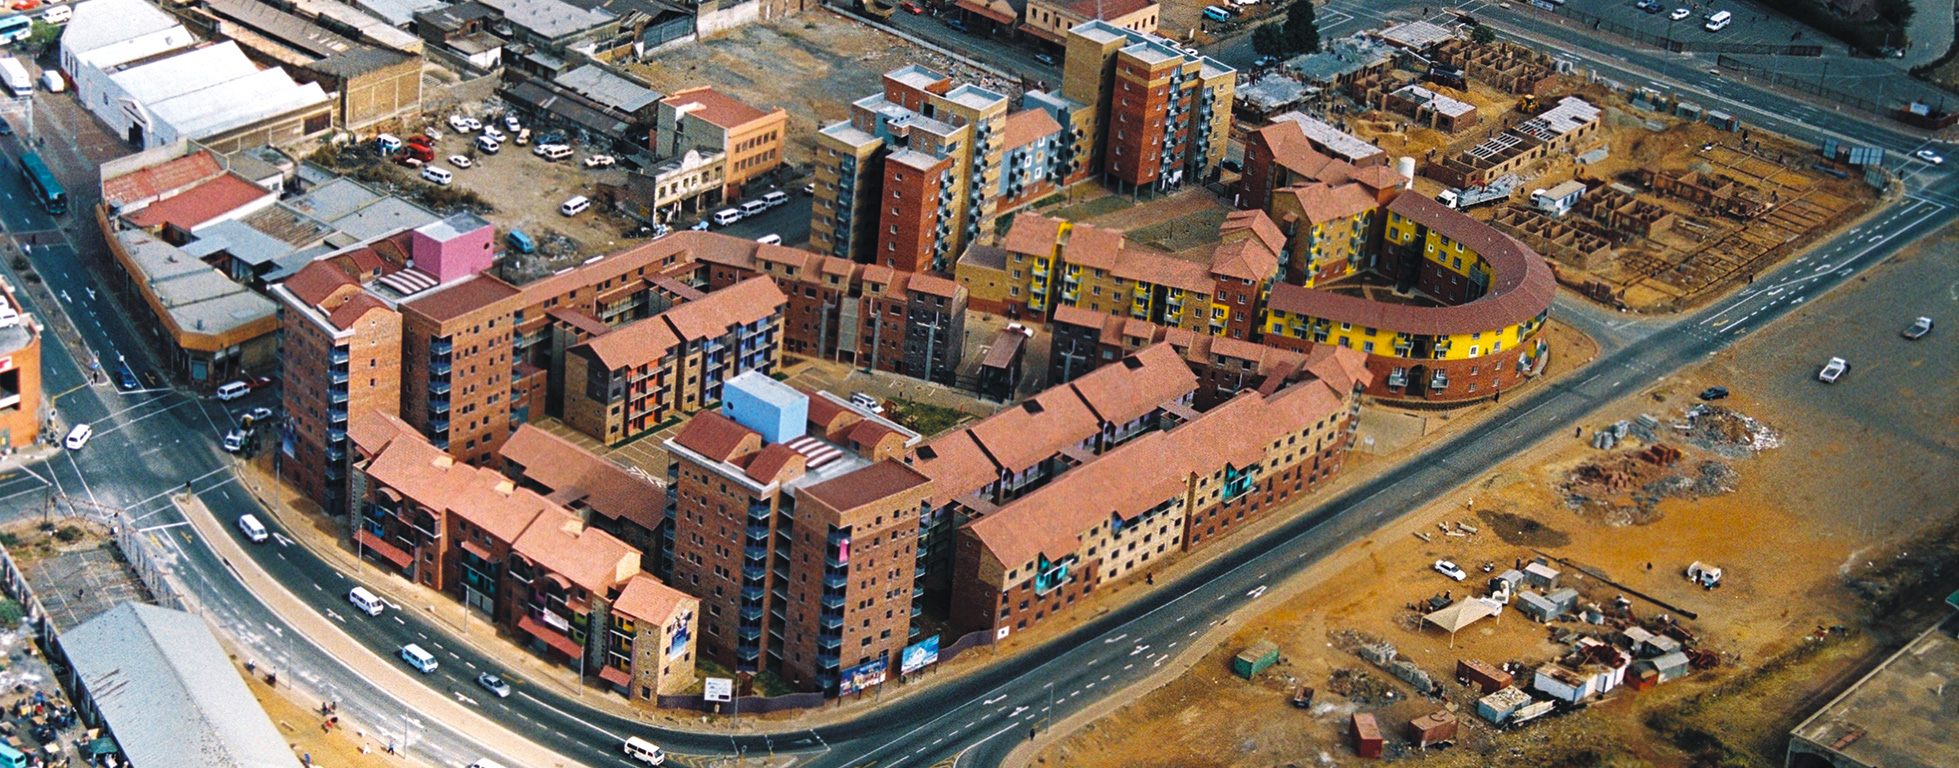 Brickfields Social Housing Development